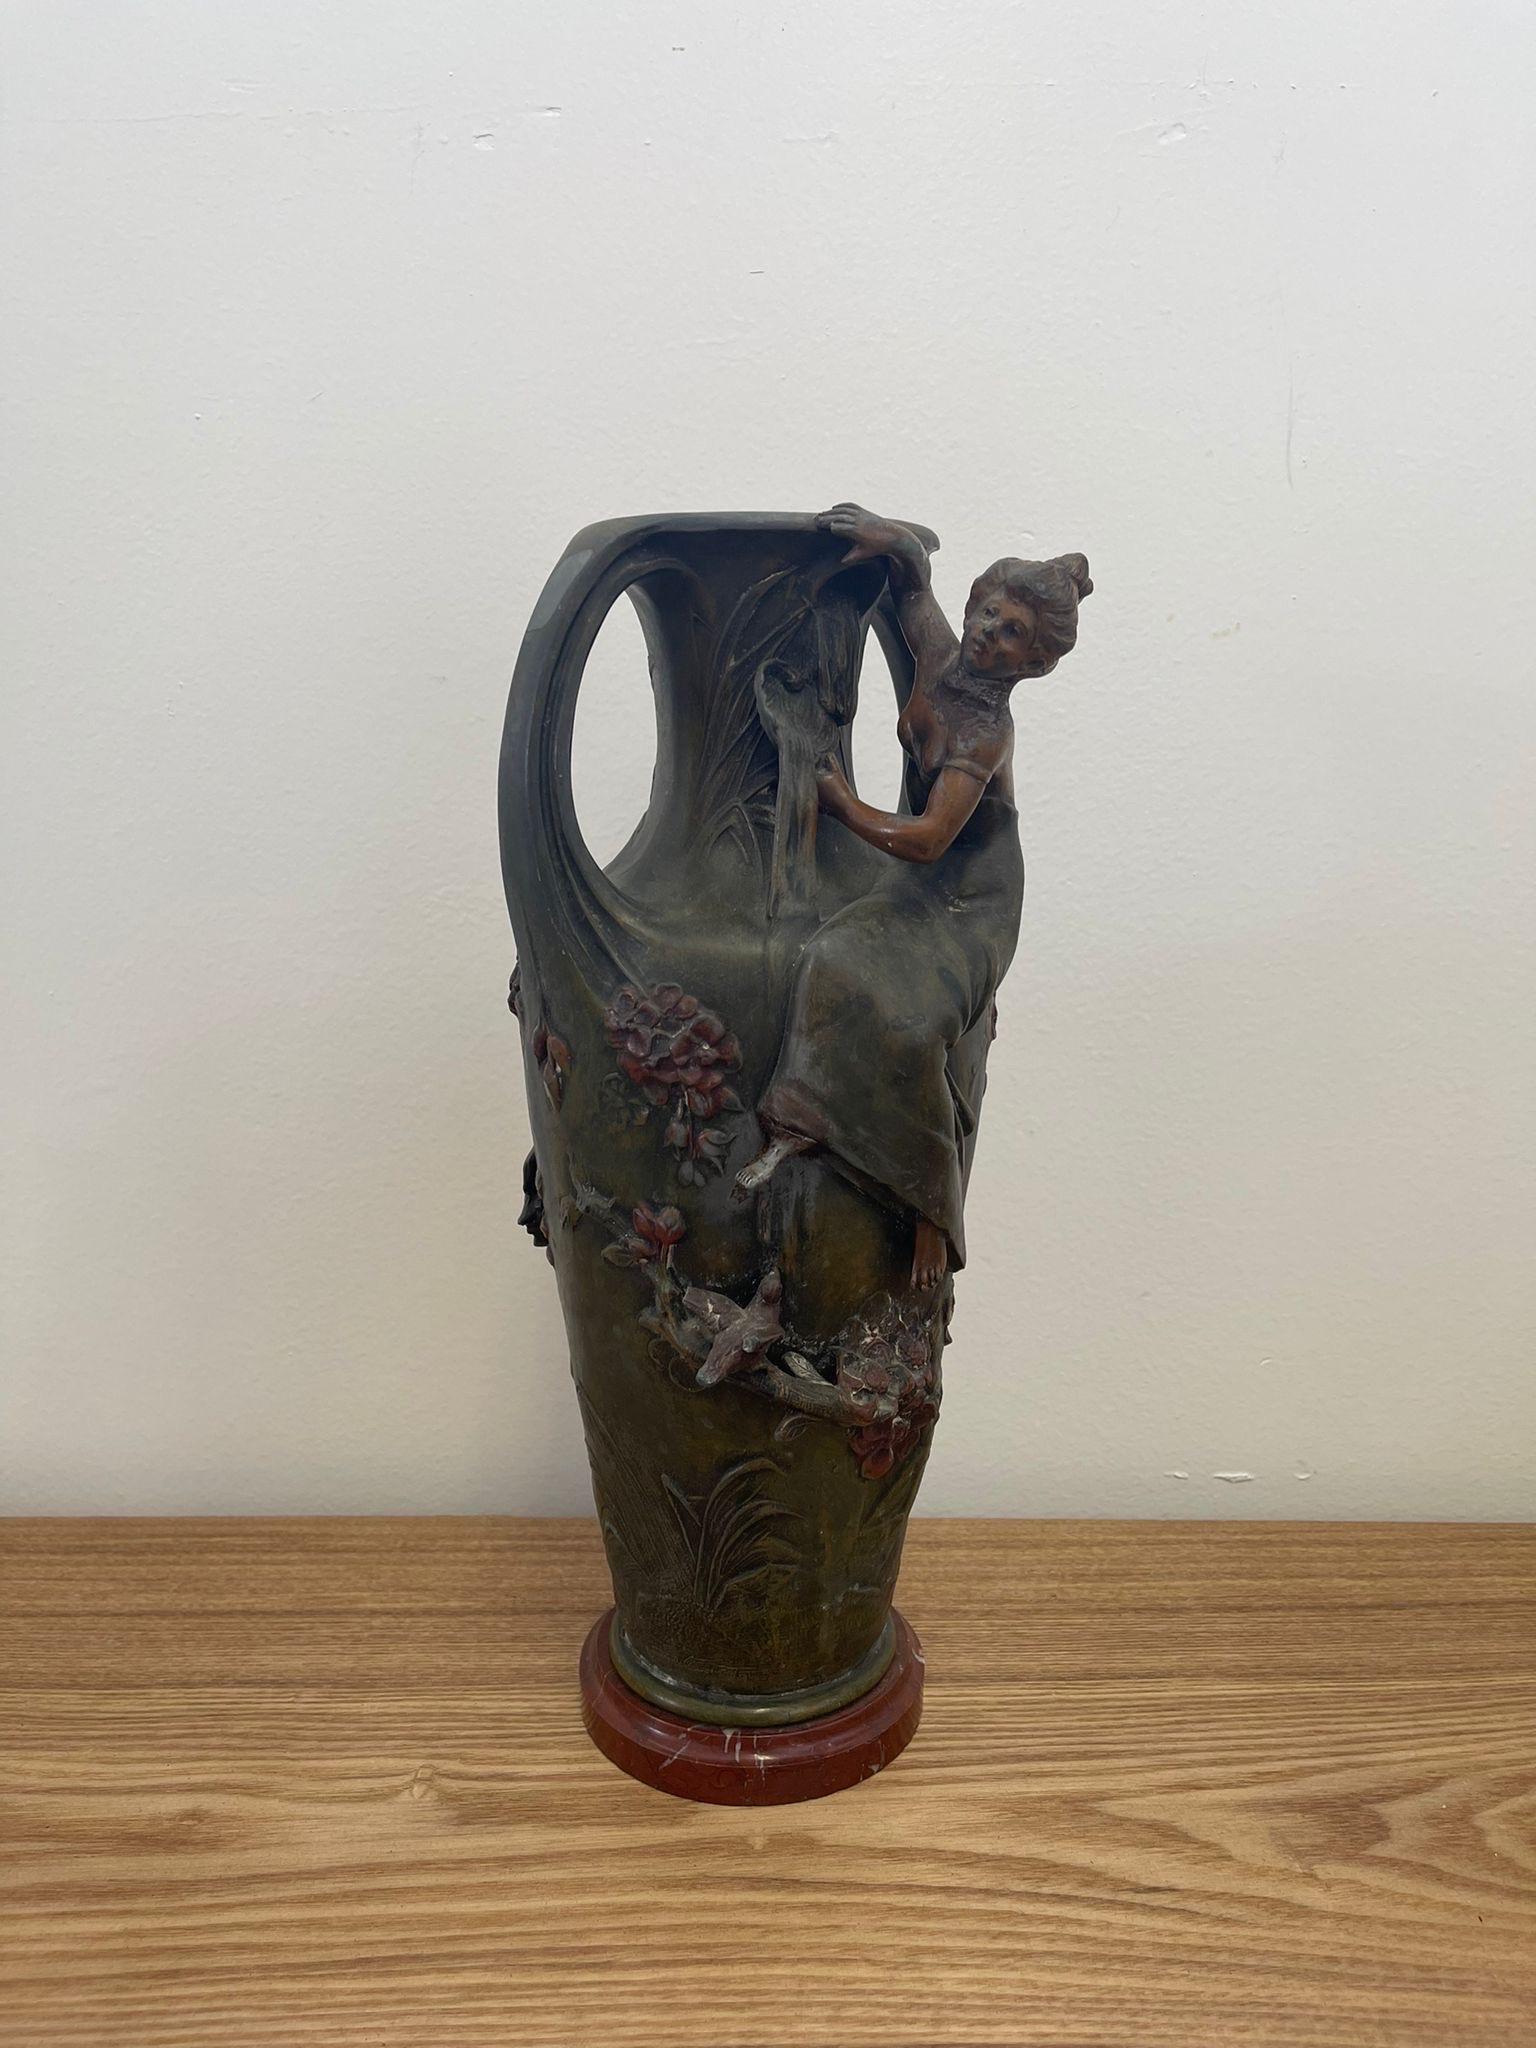 Diese Vase hat eine wunderschöne Petina um die weibliche Skulptur. Es erweckt den Eindruck, dass sie an den Ranken hochklettert, die sich um die Vase winden. Möglicherweise Anfang 1900. Sockel aus Marmor oder Stein, kann nicht bestätigt werden.